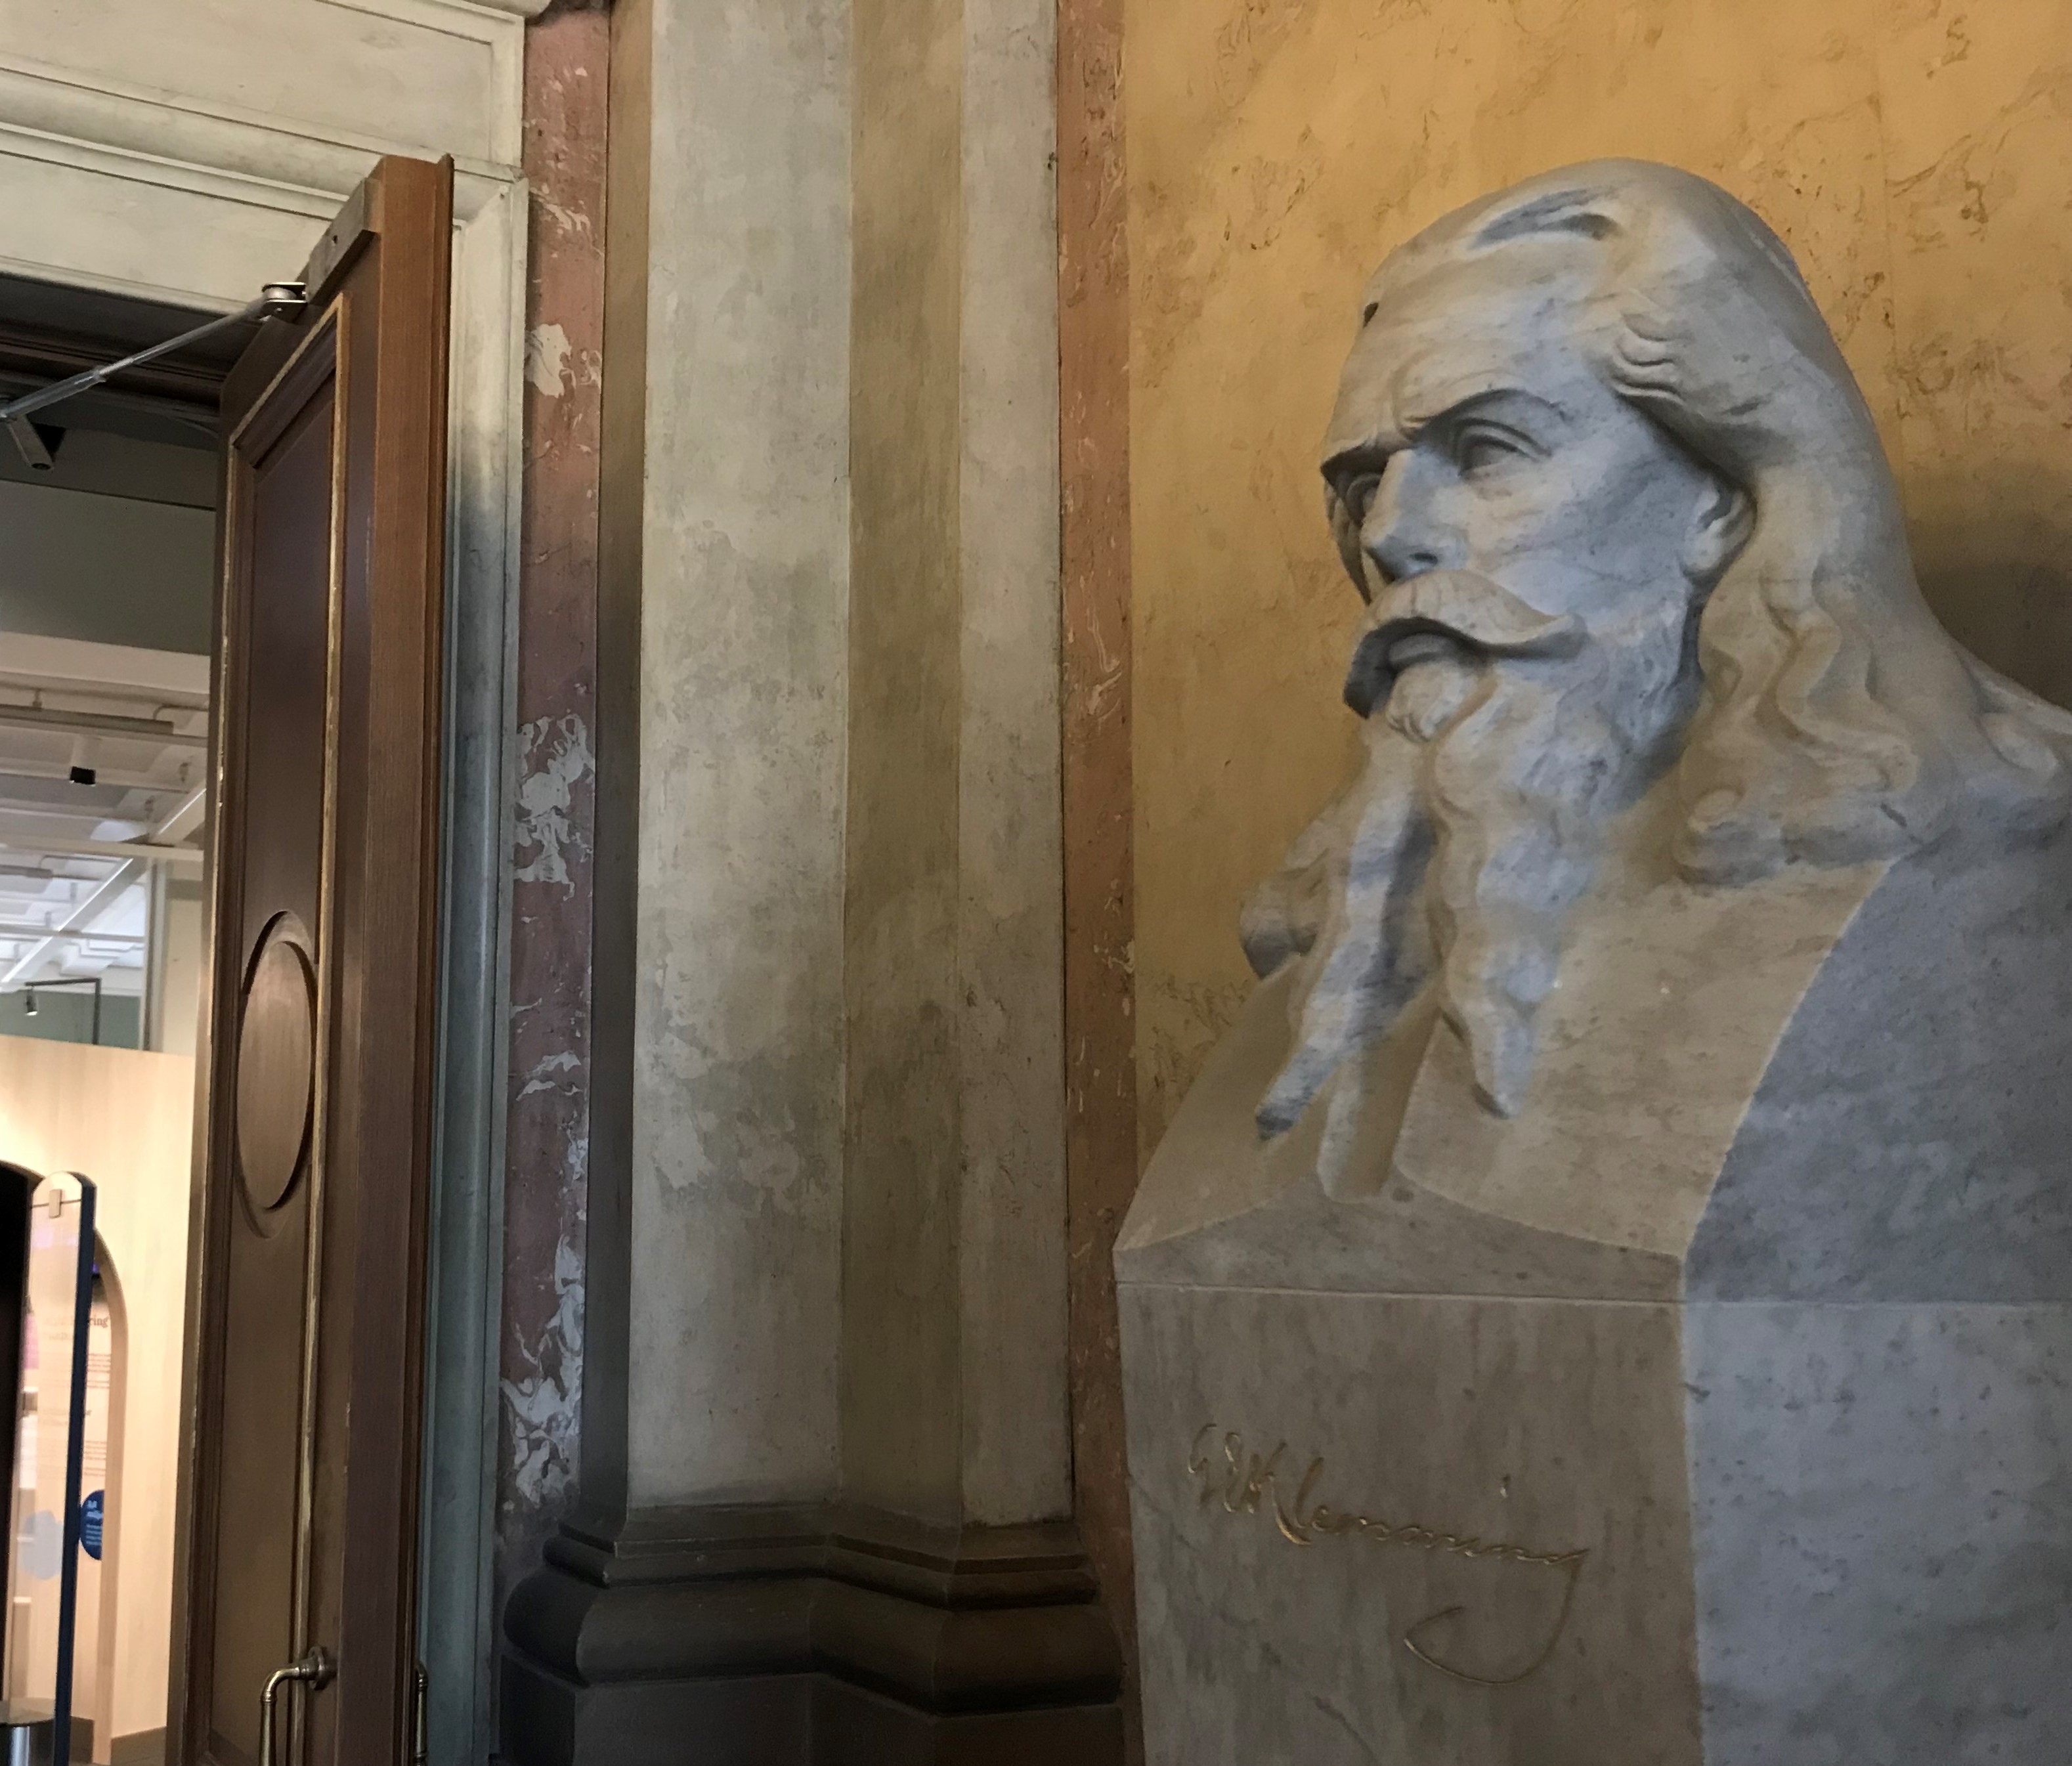 Färgfotografi av en marmorbyst föreställande en man med långt hår och långt skägg, placerad framför en öppen dörr.